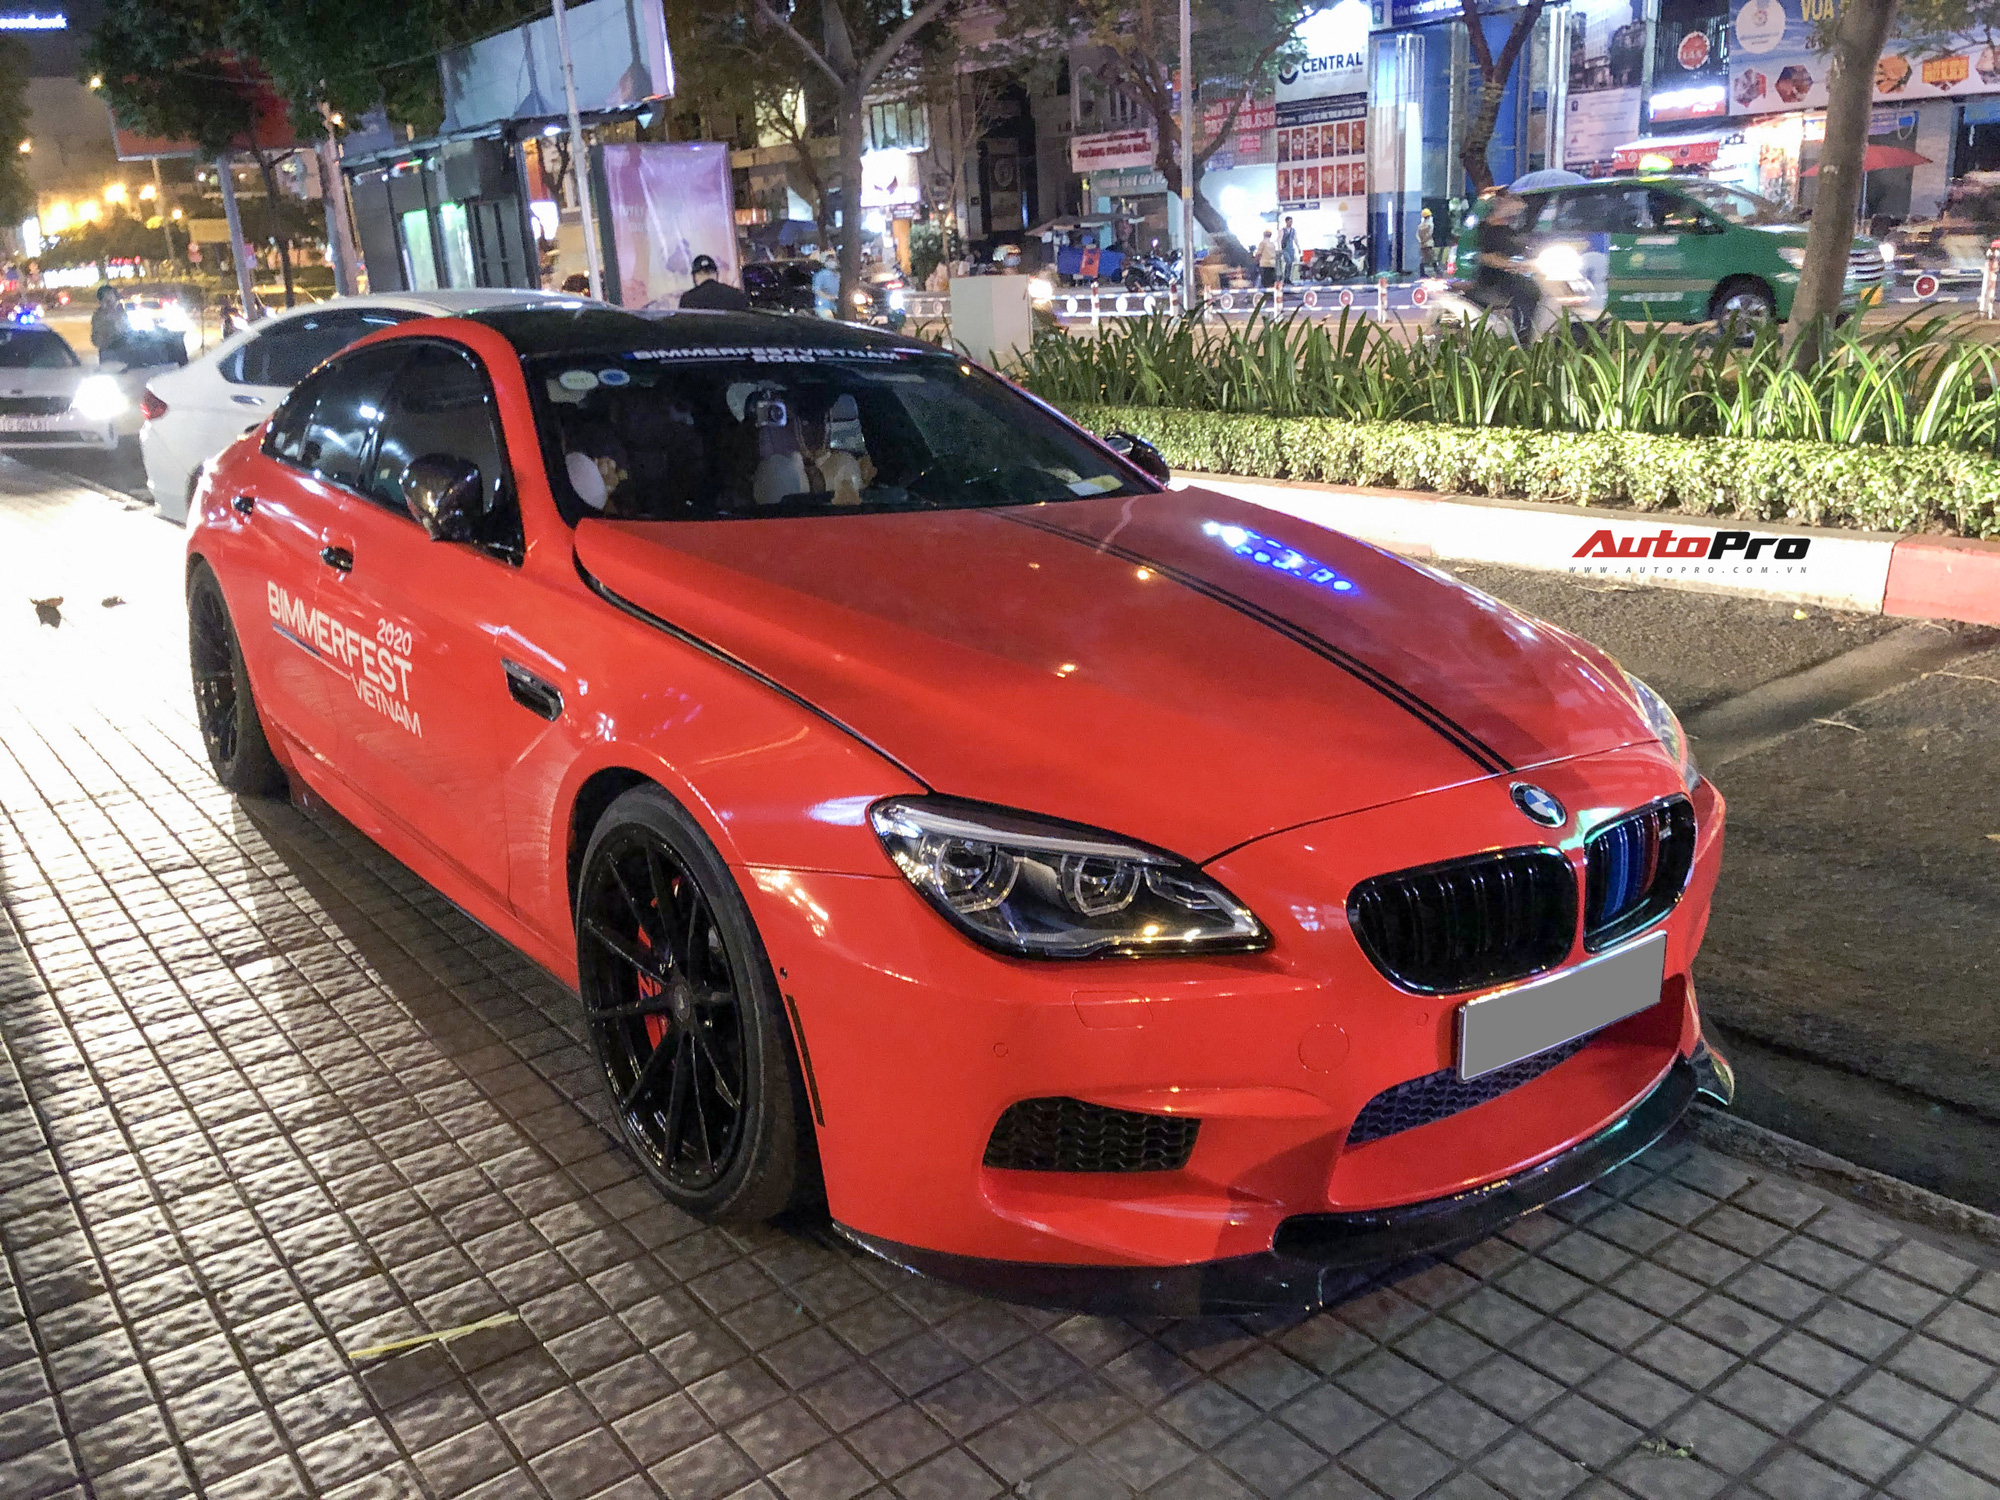 BMW M6 Gran Coupe siêu hiếm lột xác với màu sơn dễ gây nhầm lẫn - Ảnh 1.